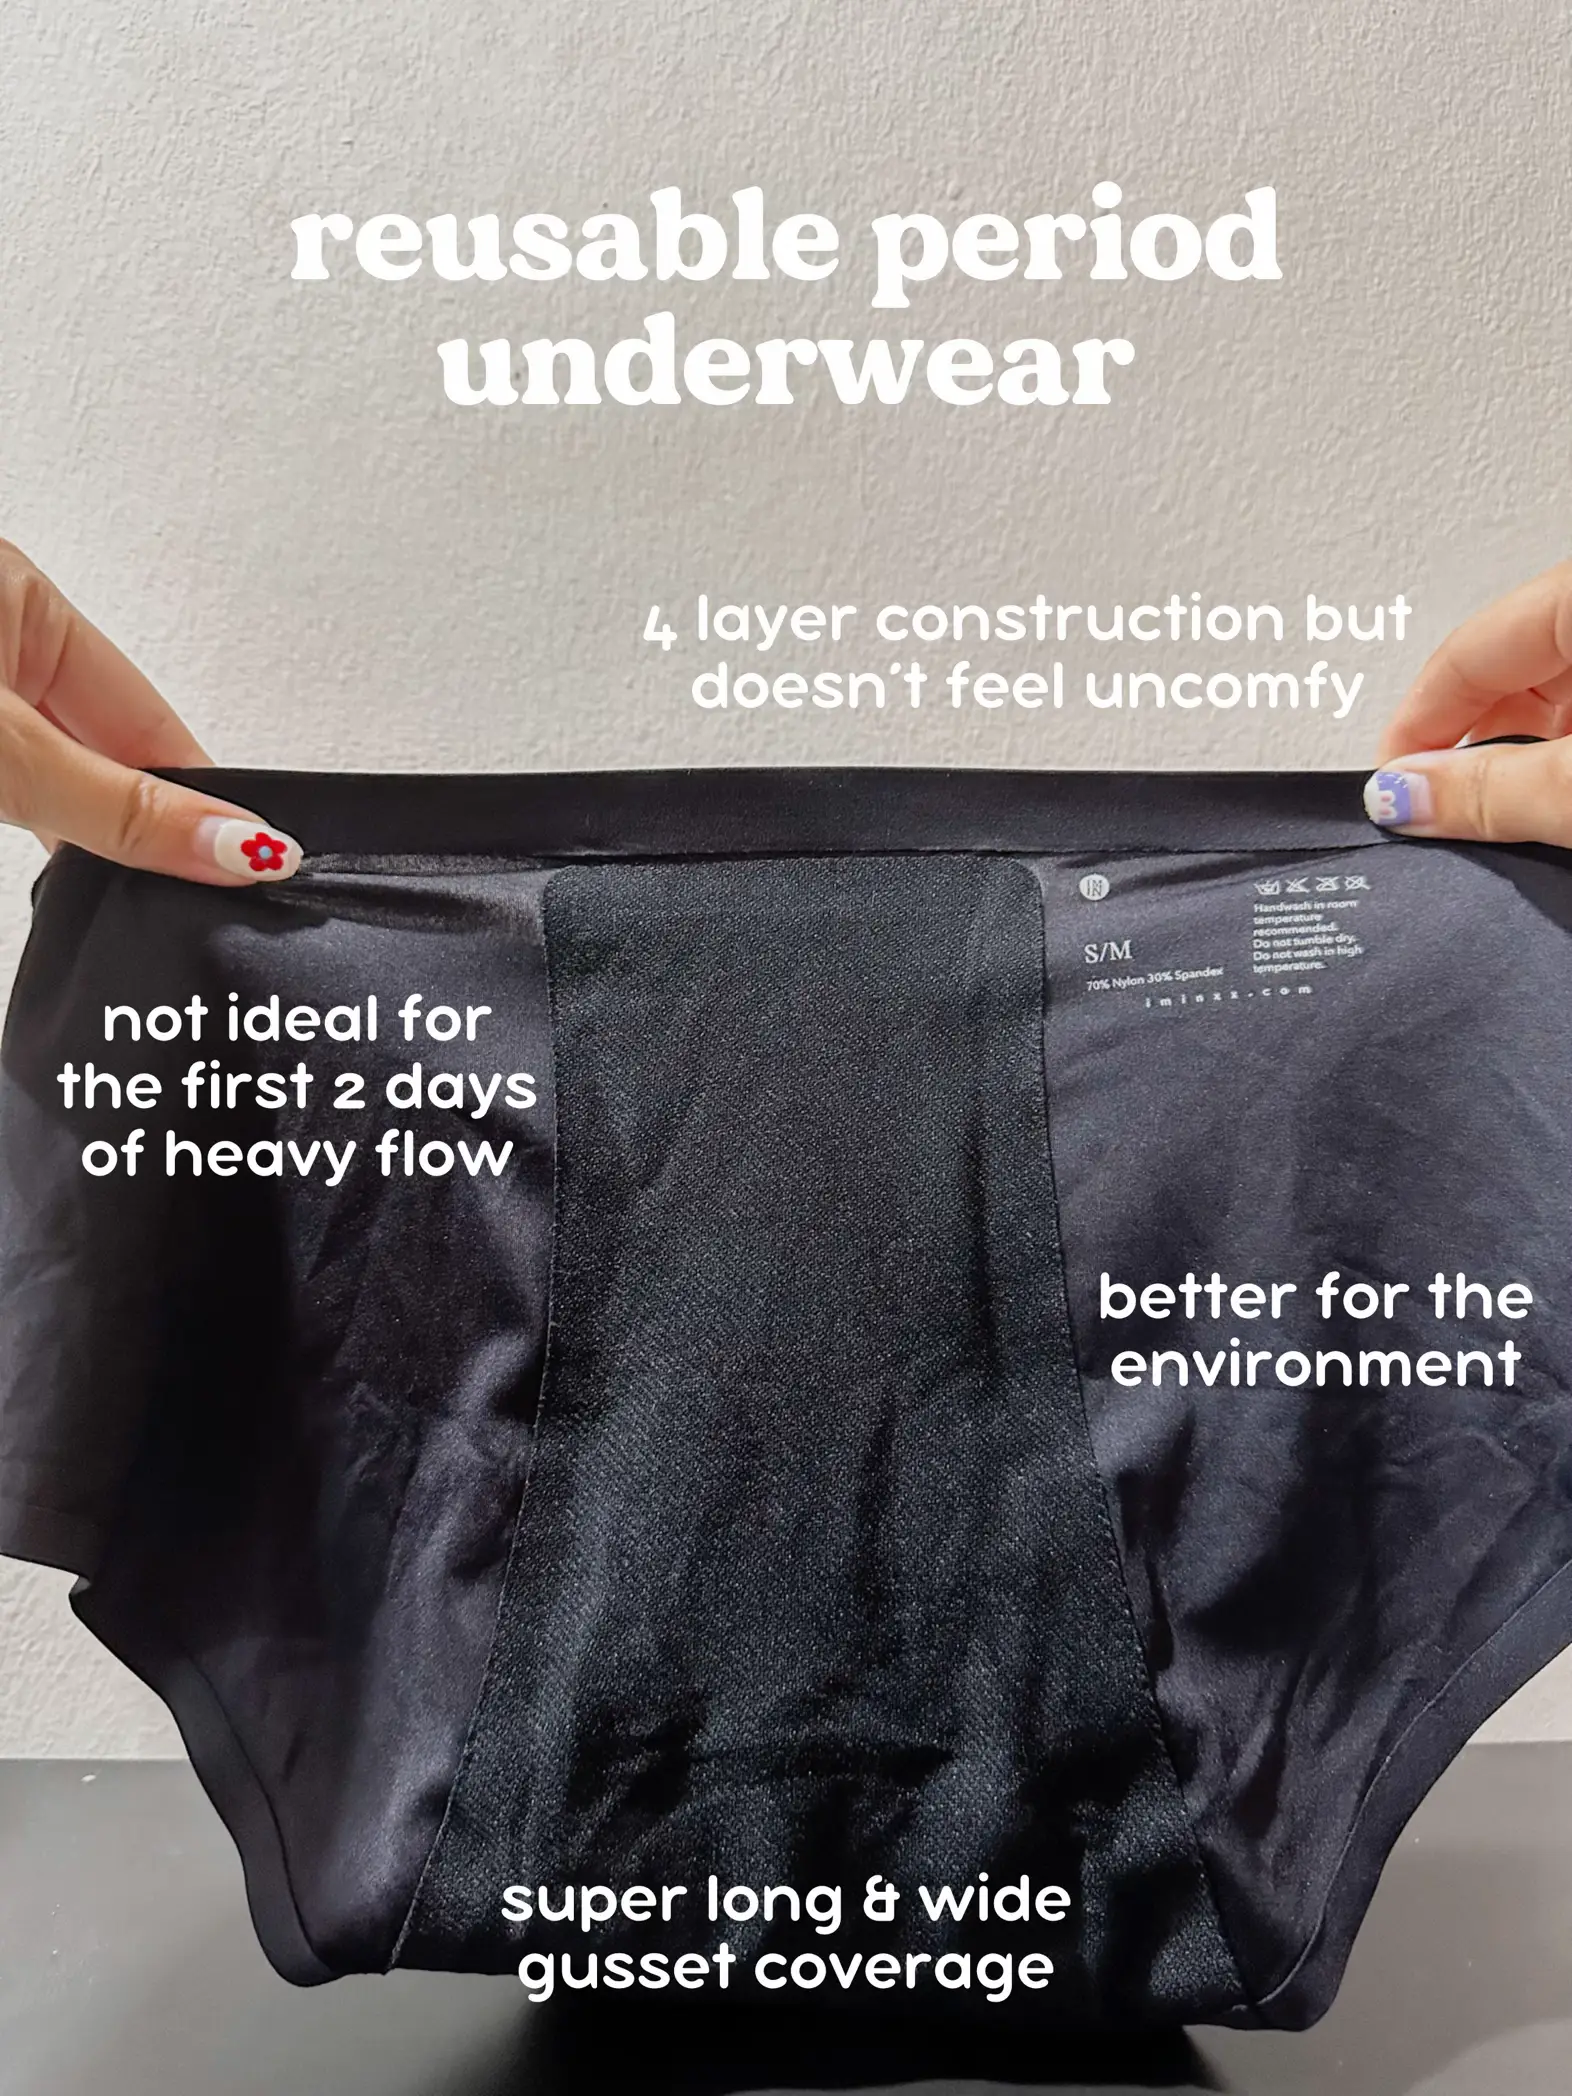 2pcs Period Underwear Organic Cotton, Menstrual Underwear 4 Leak-proof  Layers, Hygienic Washable Period Underwear For Women Girls